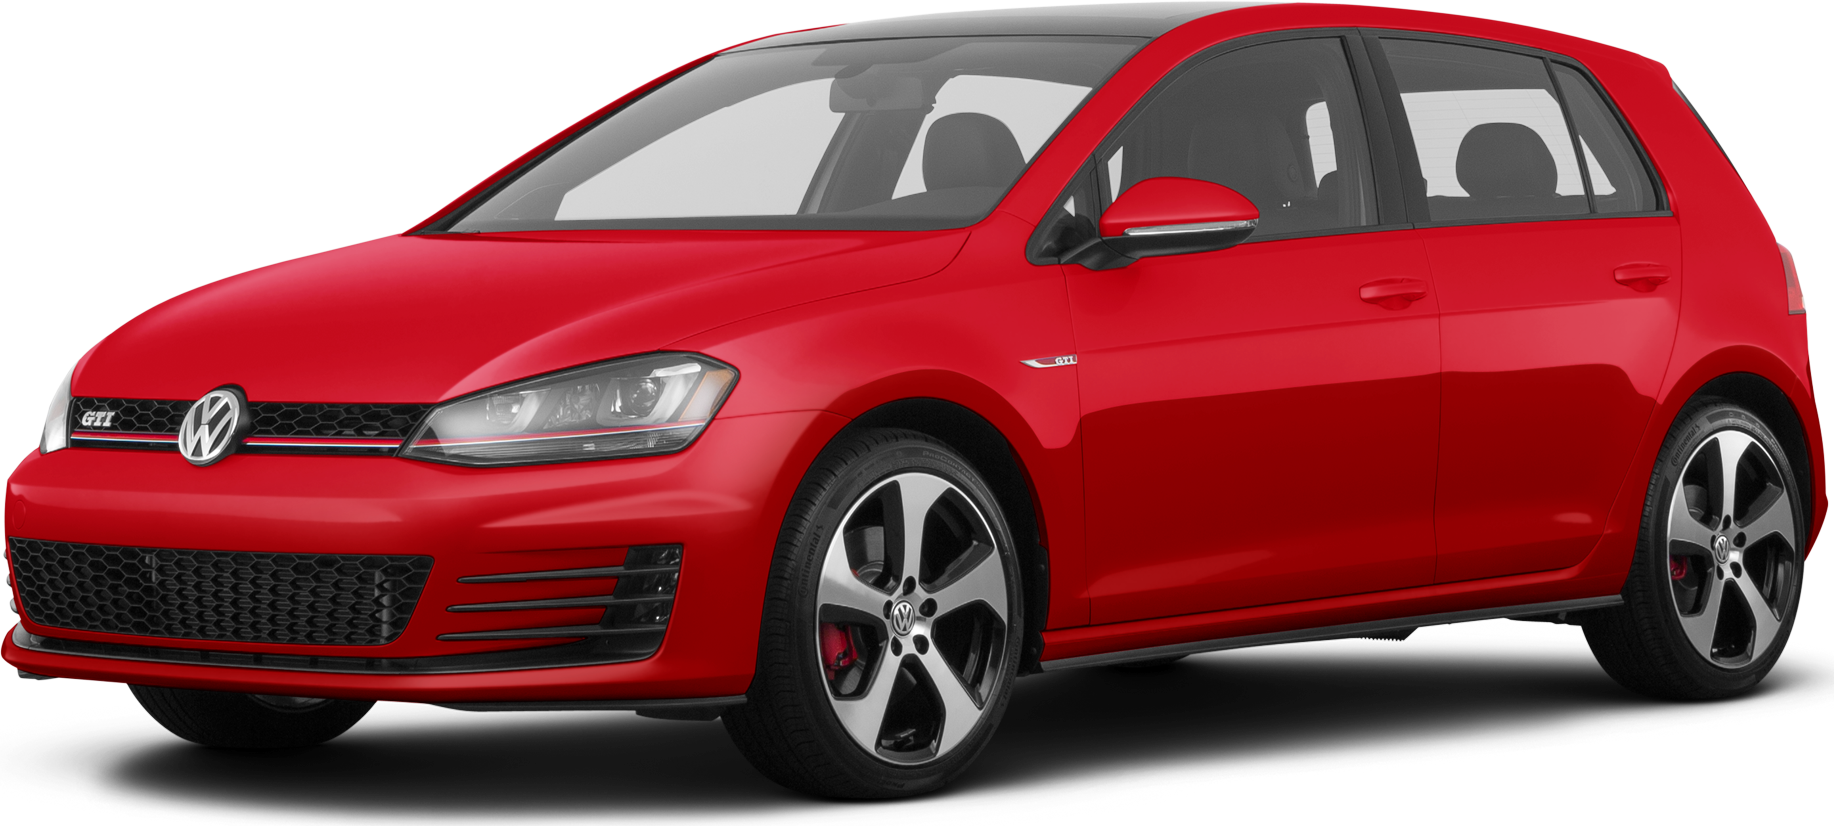 2017 Volkswagen Golf GTI Price, Value, Ratings & Reviews